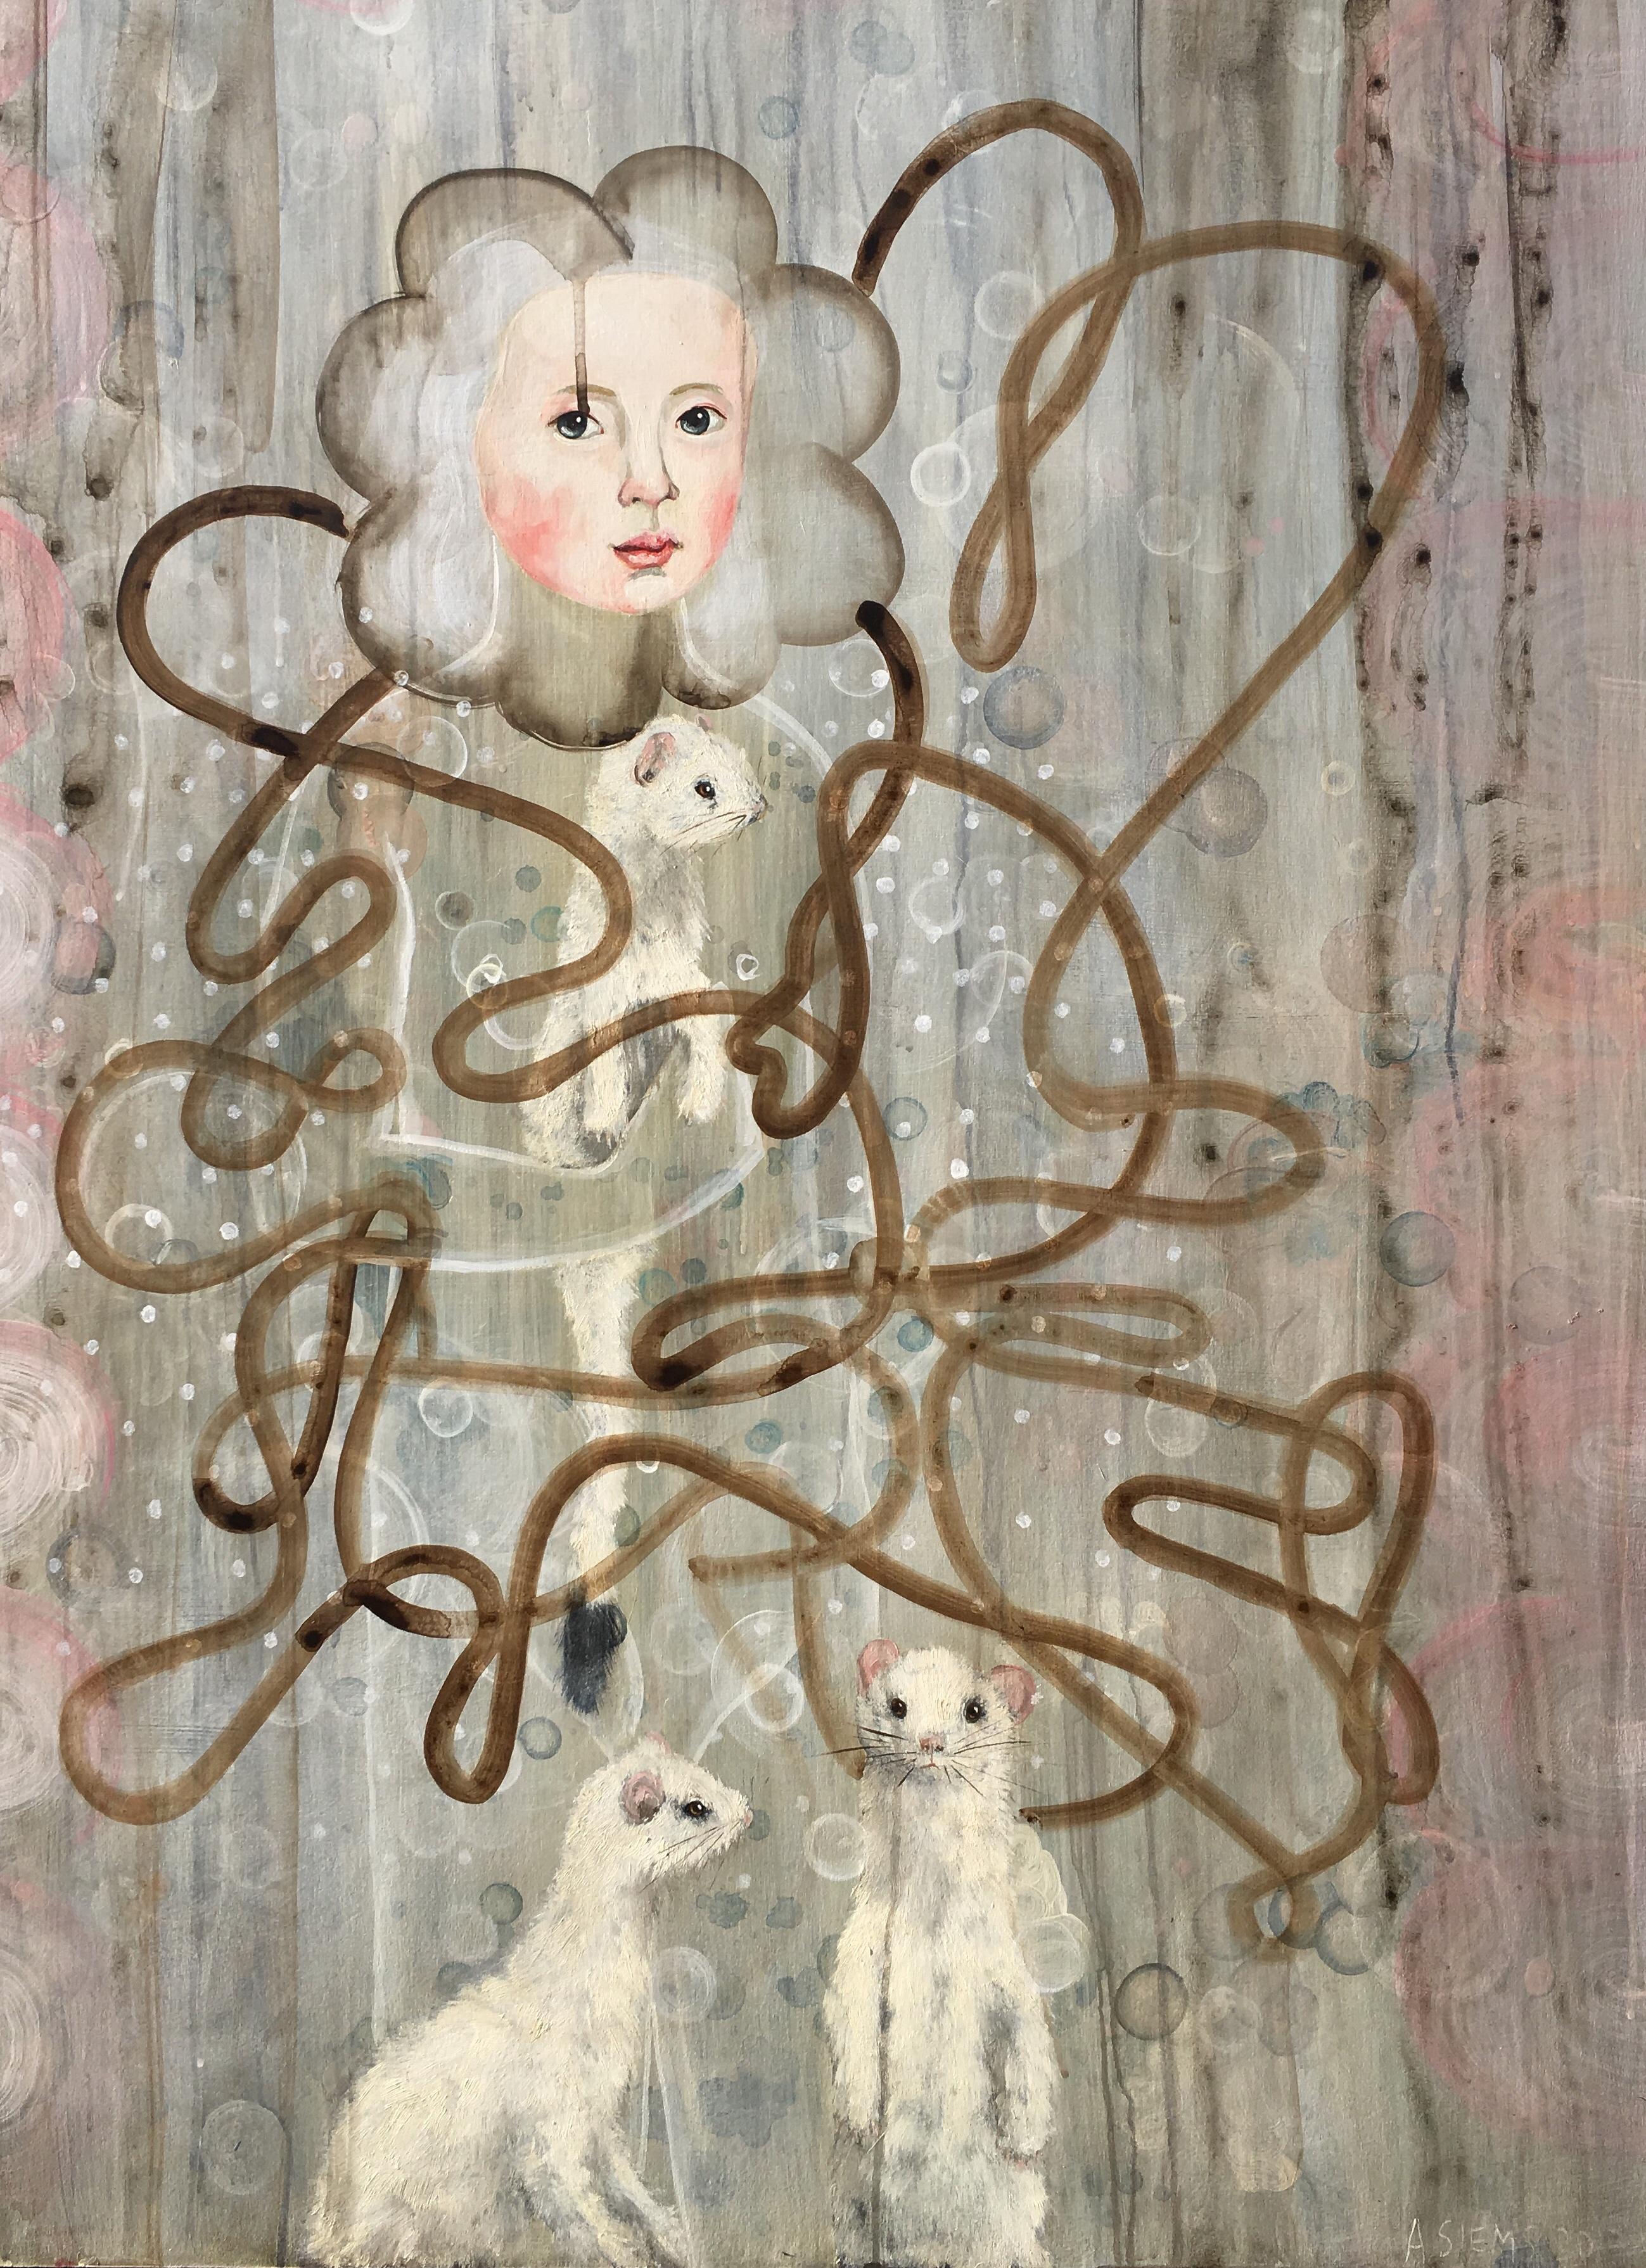 Des motifs fluides, une palette poudrée et un symbolisme séduisant vous invitent dans le monde puissamment enchanteur d'Anne Siems. Comme beaucoup de ses œuvres, "Hermine" équilibre la lumière et l'obscurité, la magie, la sensualité, la vie, le